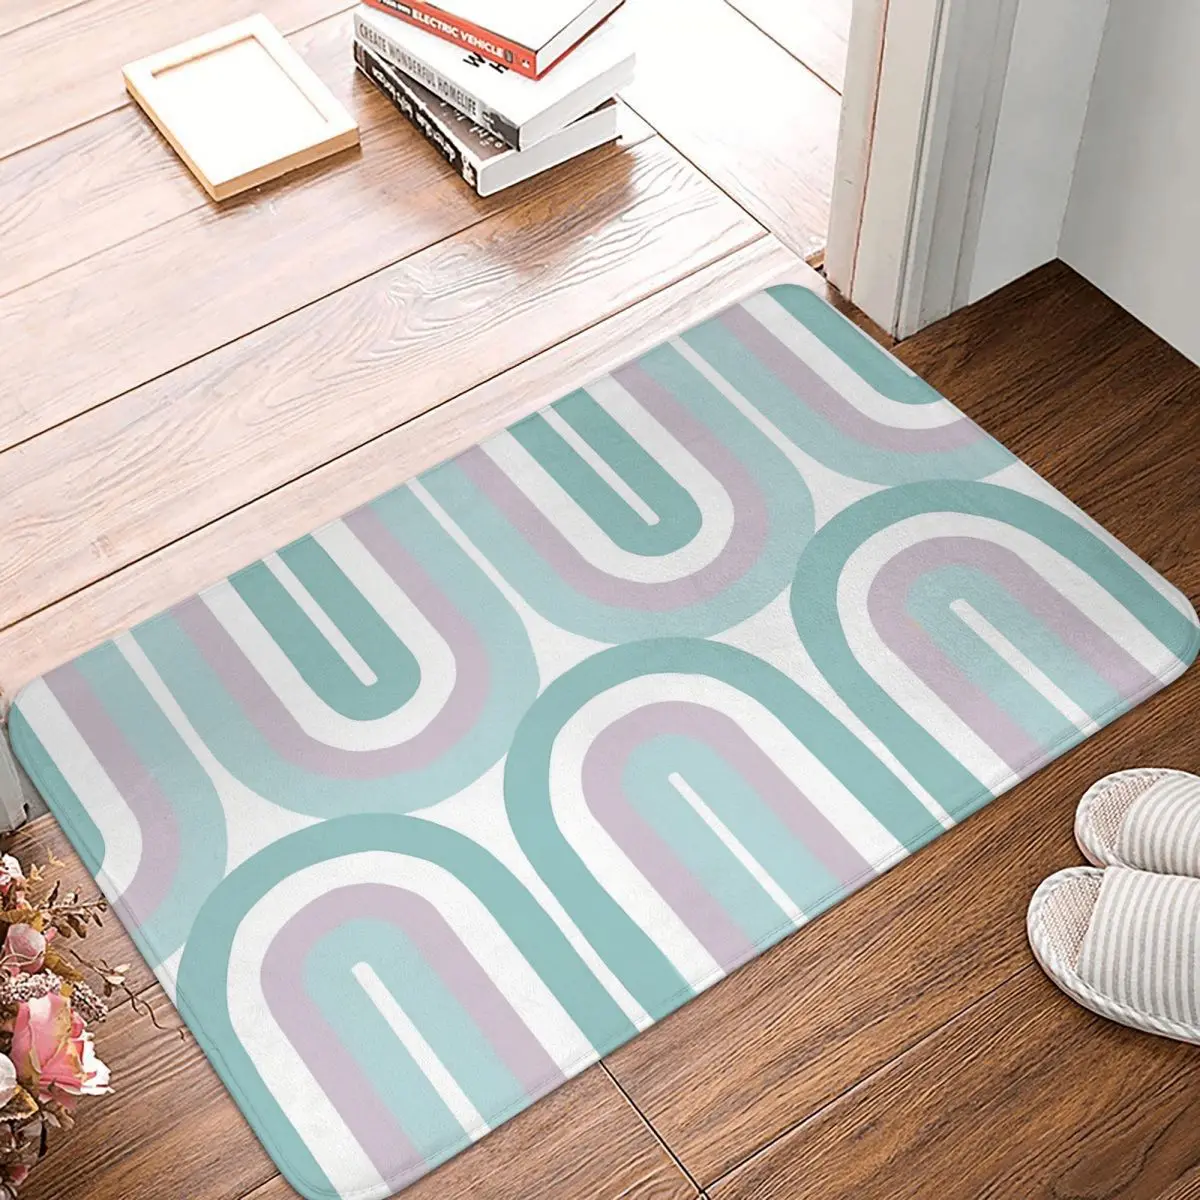 

Swirl Pattern Non-slip Doormat Bath Mat Groovy Cool Toned Floor Carpet Entrance Door Rug Bedroom Decor